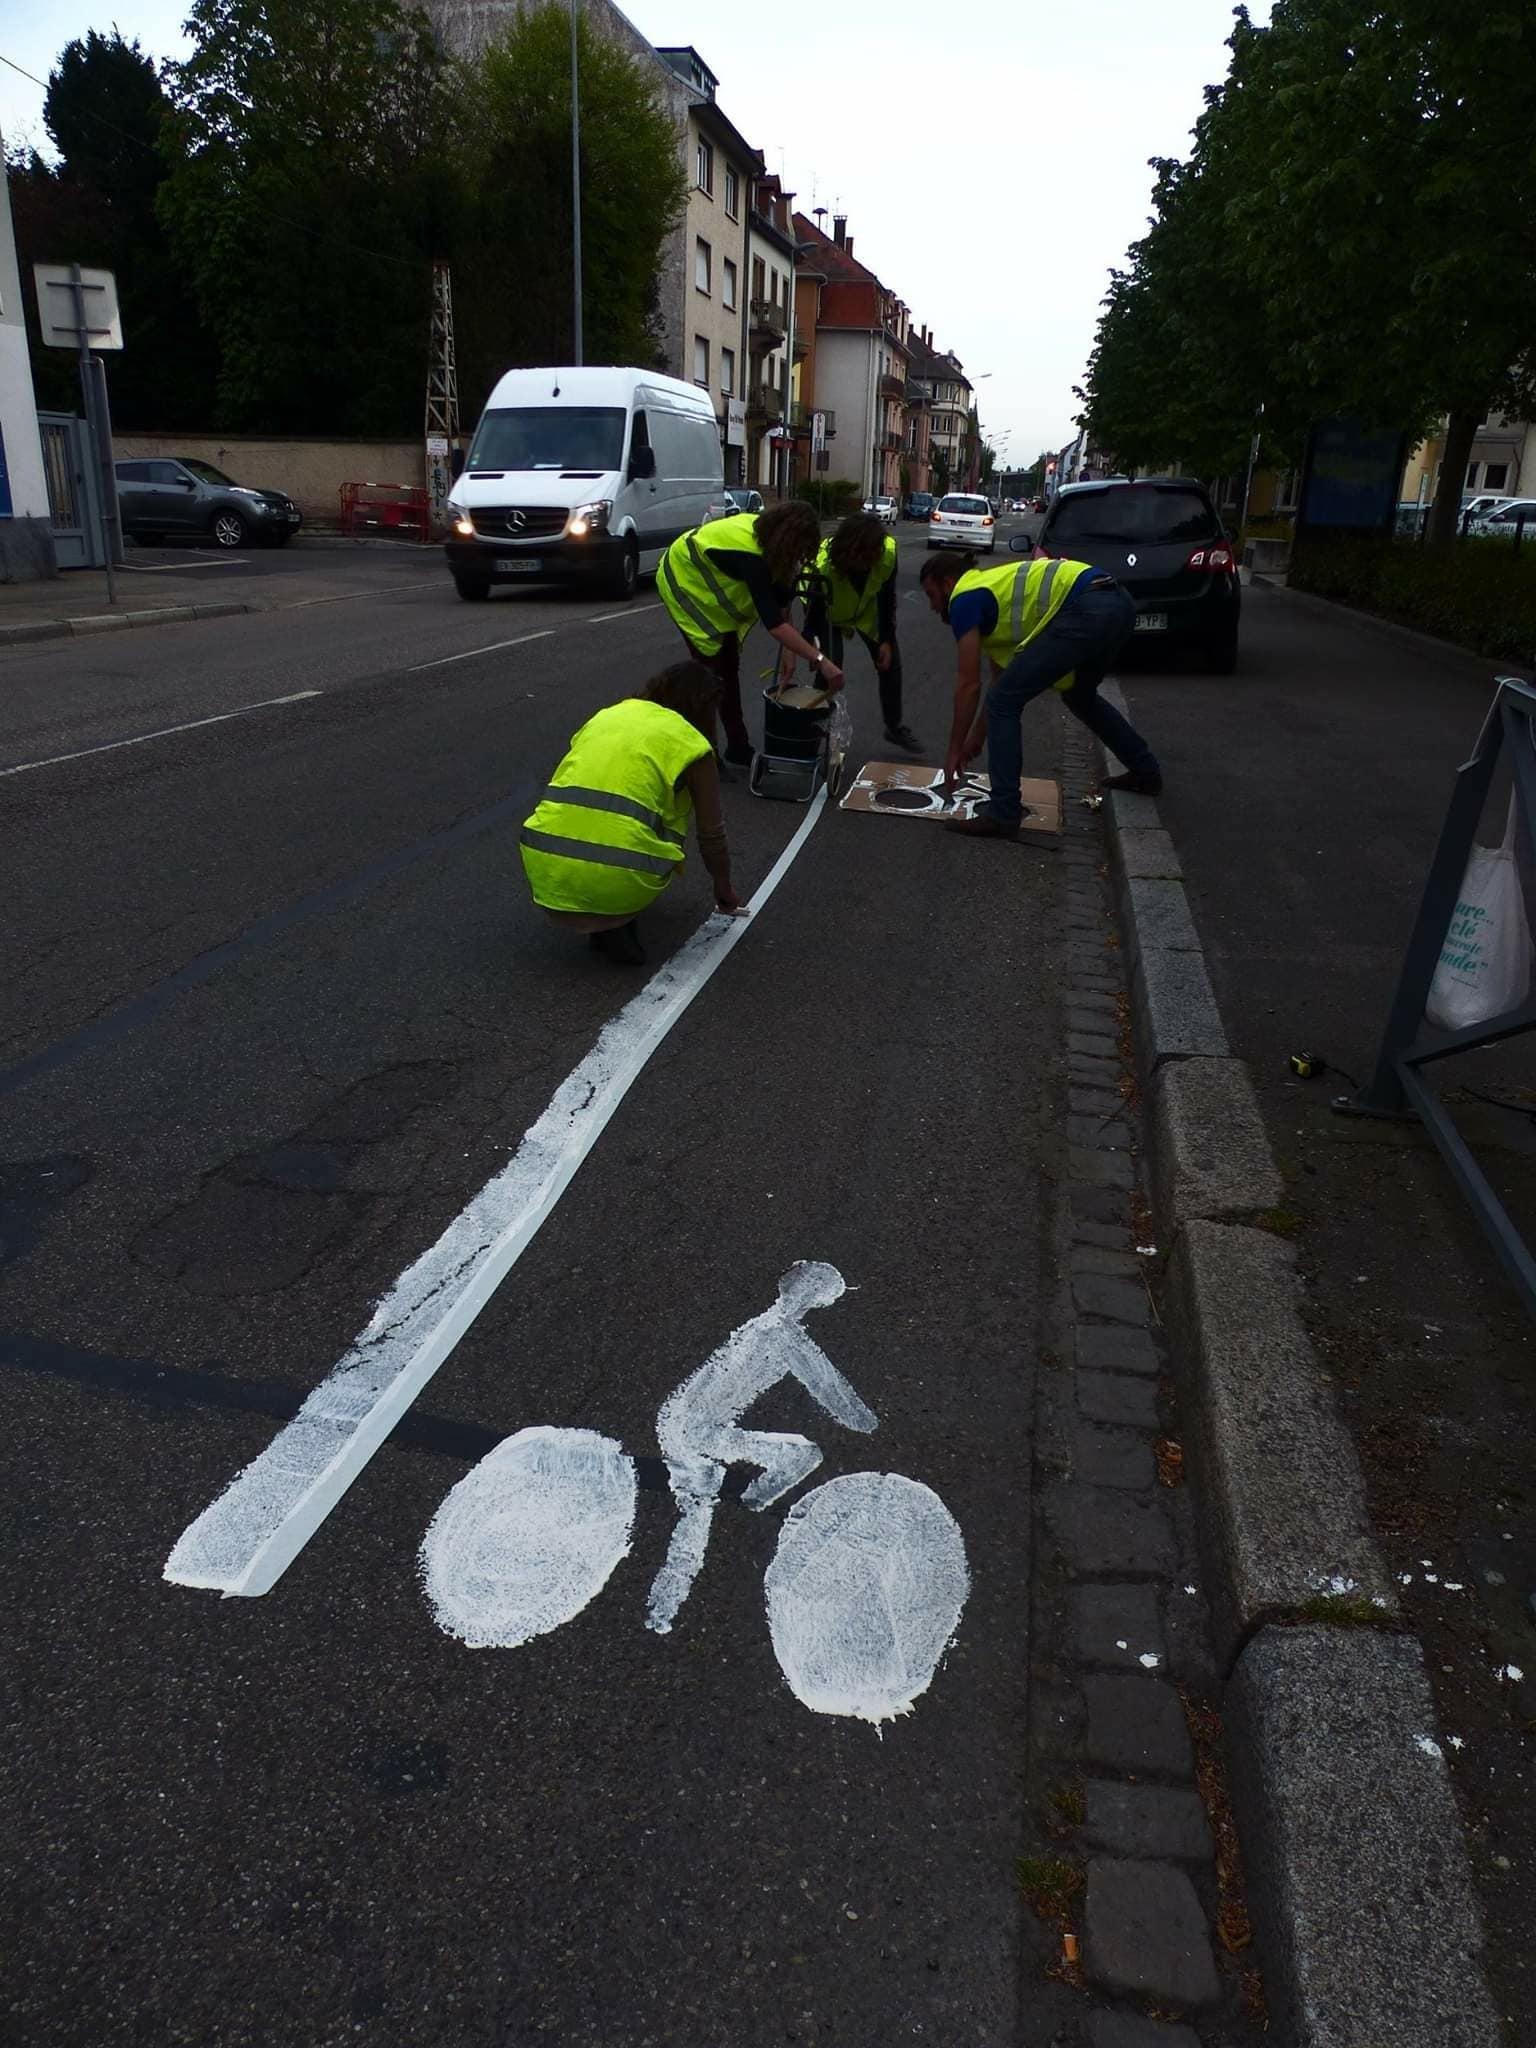 Les membres du collectif Velorution ont tracé de fausses bandes cyclables pour matérialiser d’éventuelles bandes cyclables à Schiltigheim (photo transmise)